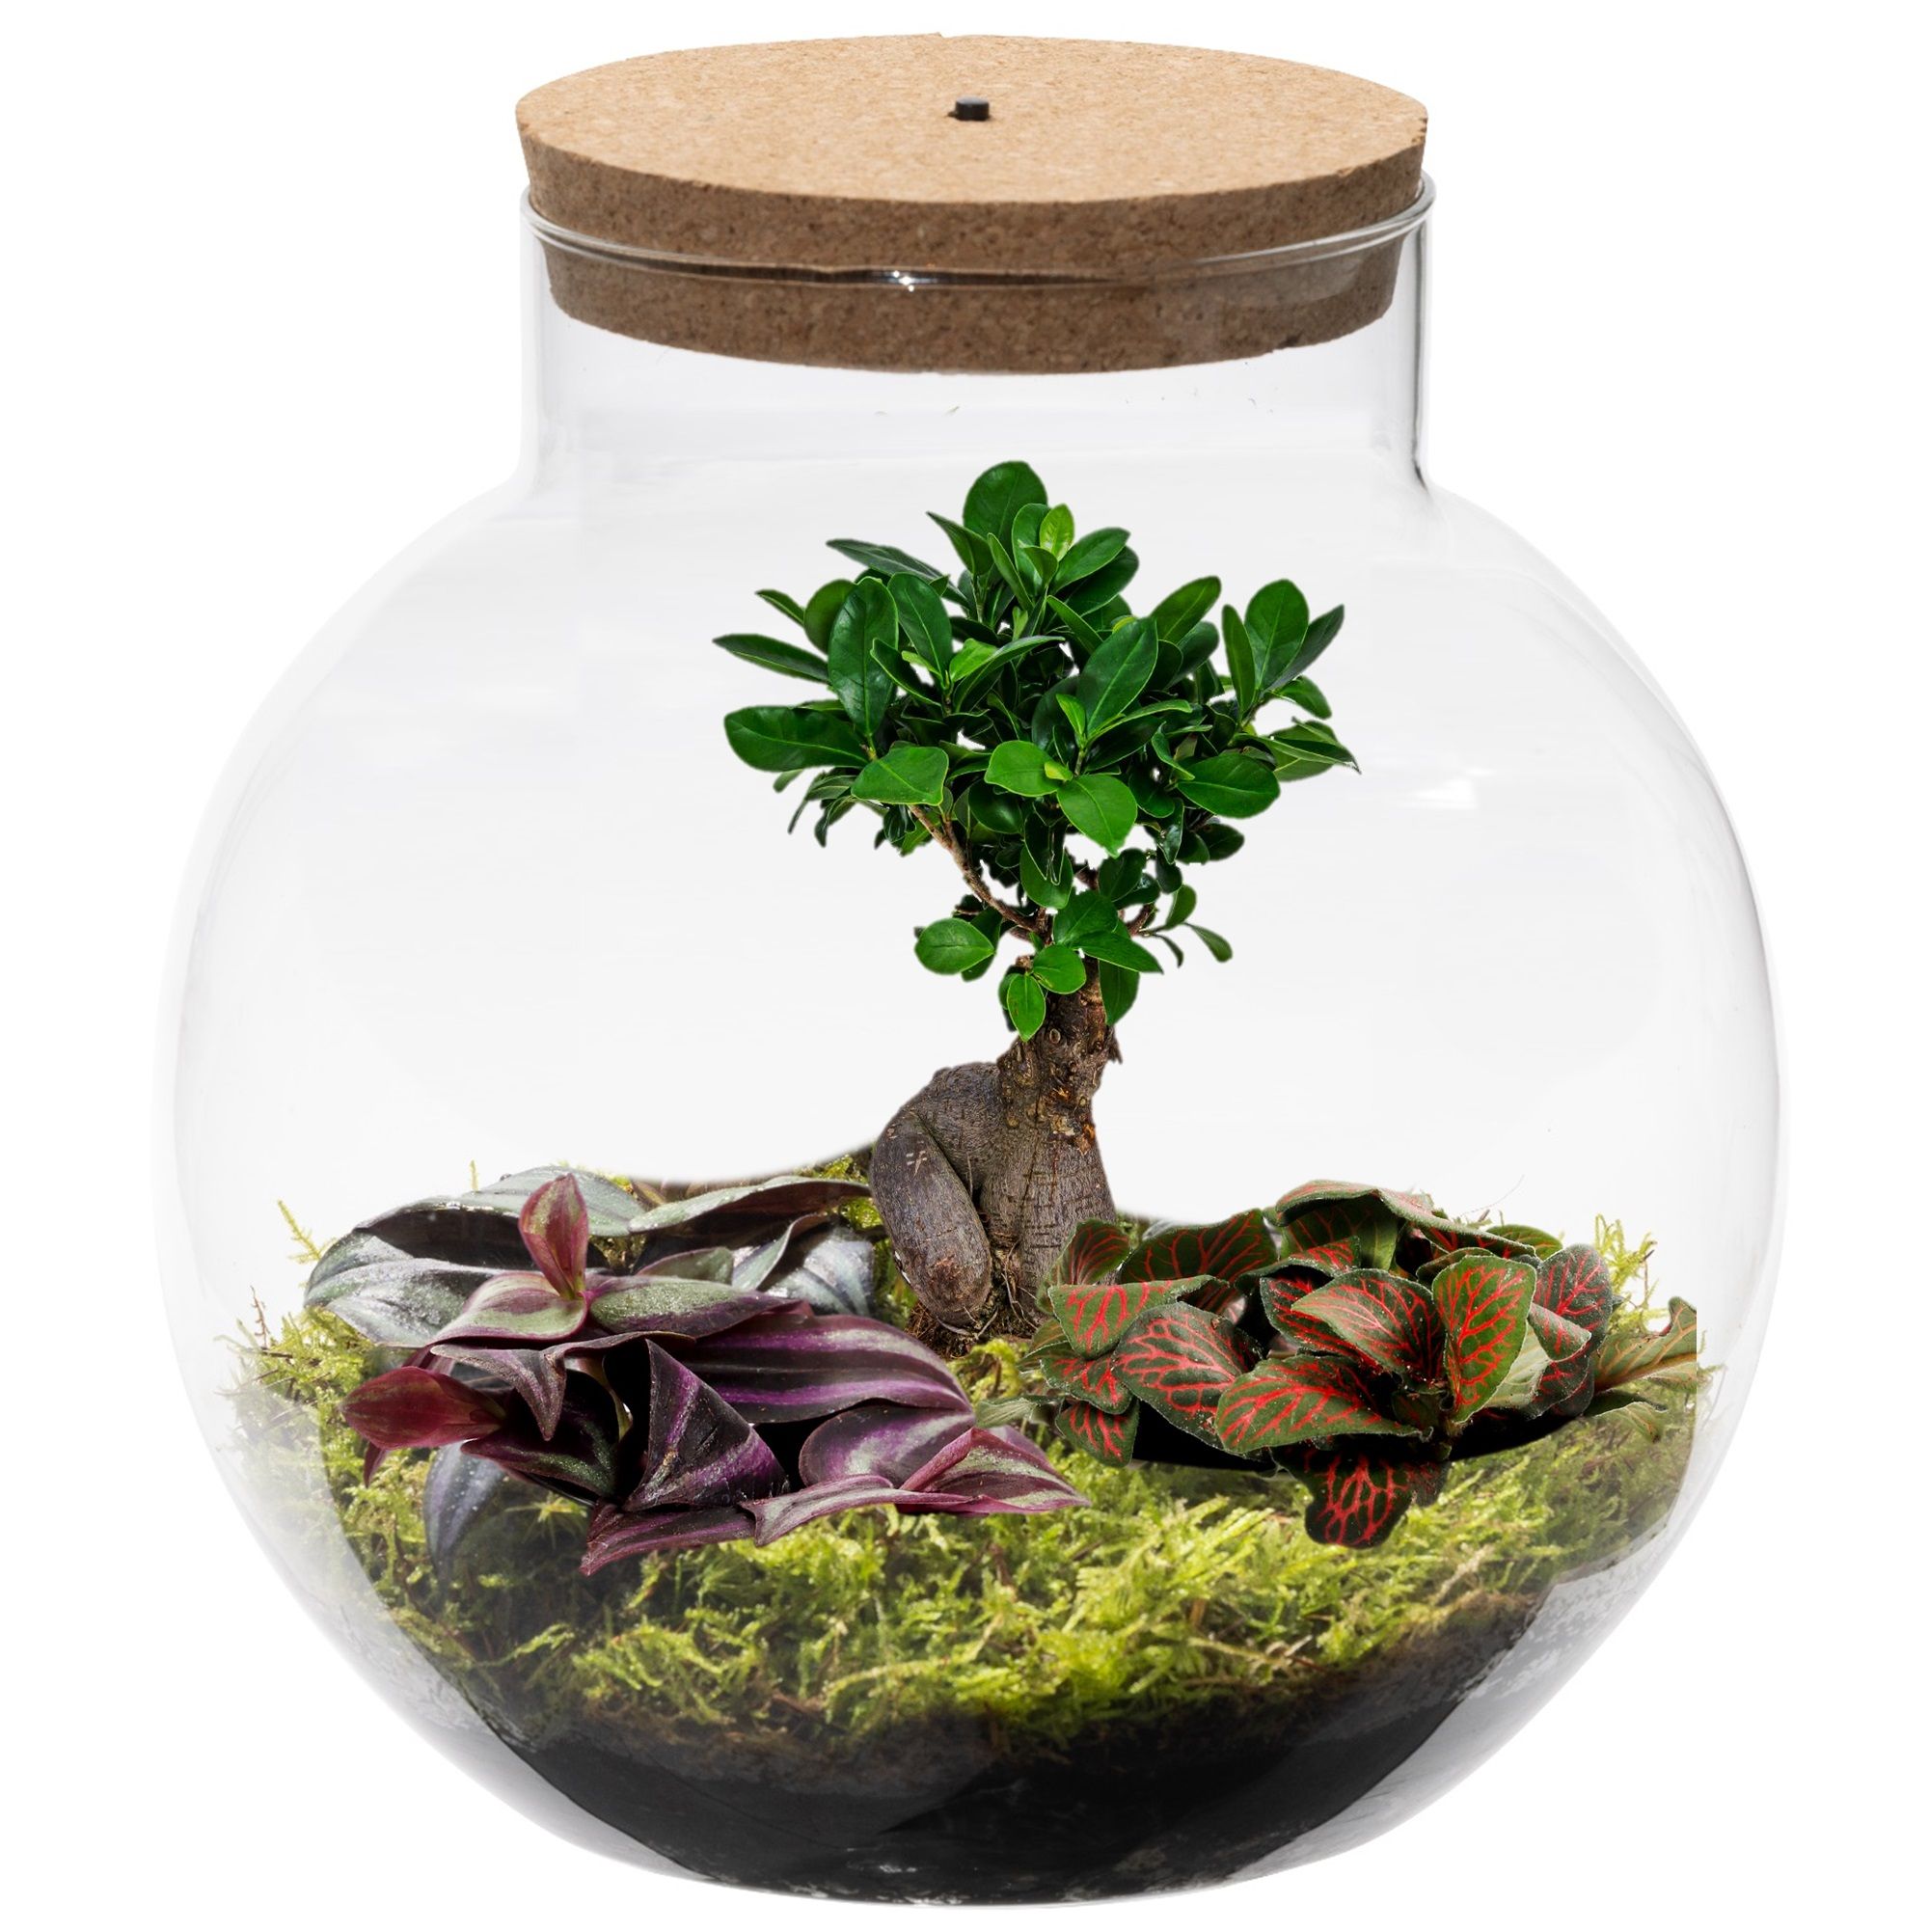 vdvelde.com - Plante écosystème avec lampe - Ecoworld Bonsai Biodome - Plante dans une sphère en verre - 1 Bonsai et 2 Plantes de Terrarium colorées - Verre sphérique - Hauteur 25 cm